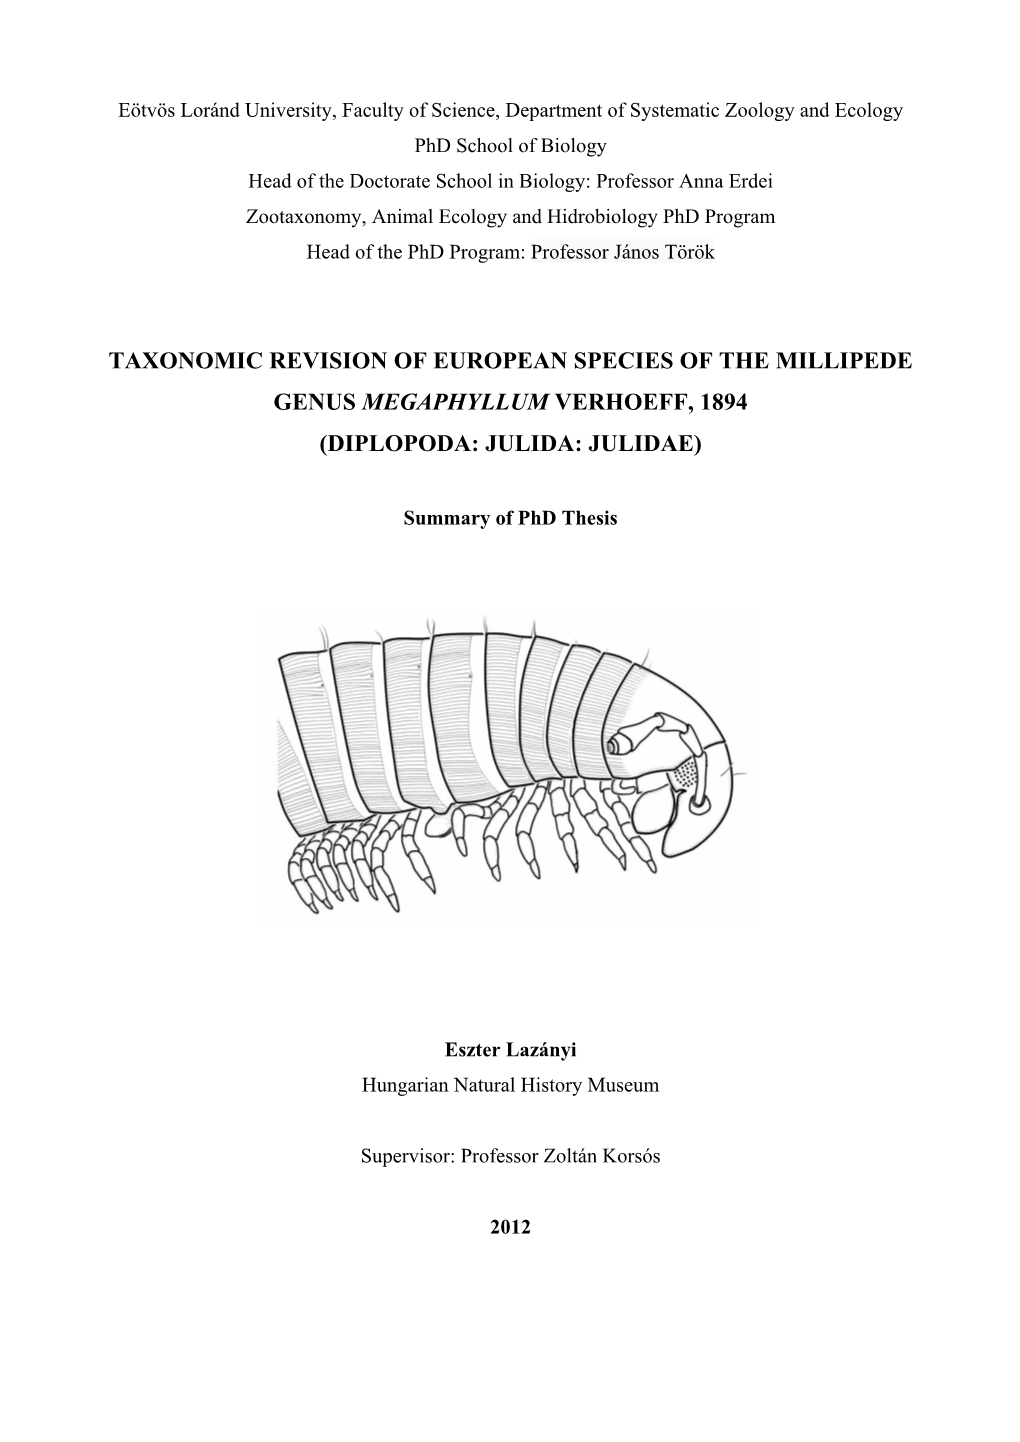 Taxonomic Revision of European Species of the Millipede Genus Megaphyllum Verhoeff, 1894 (Diplopoda: Julida: Julidae)